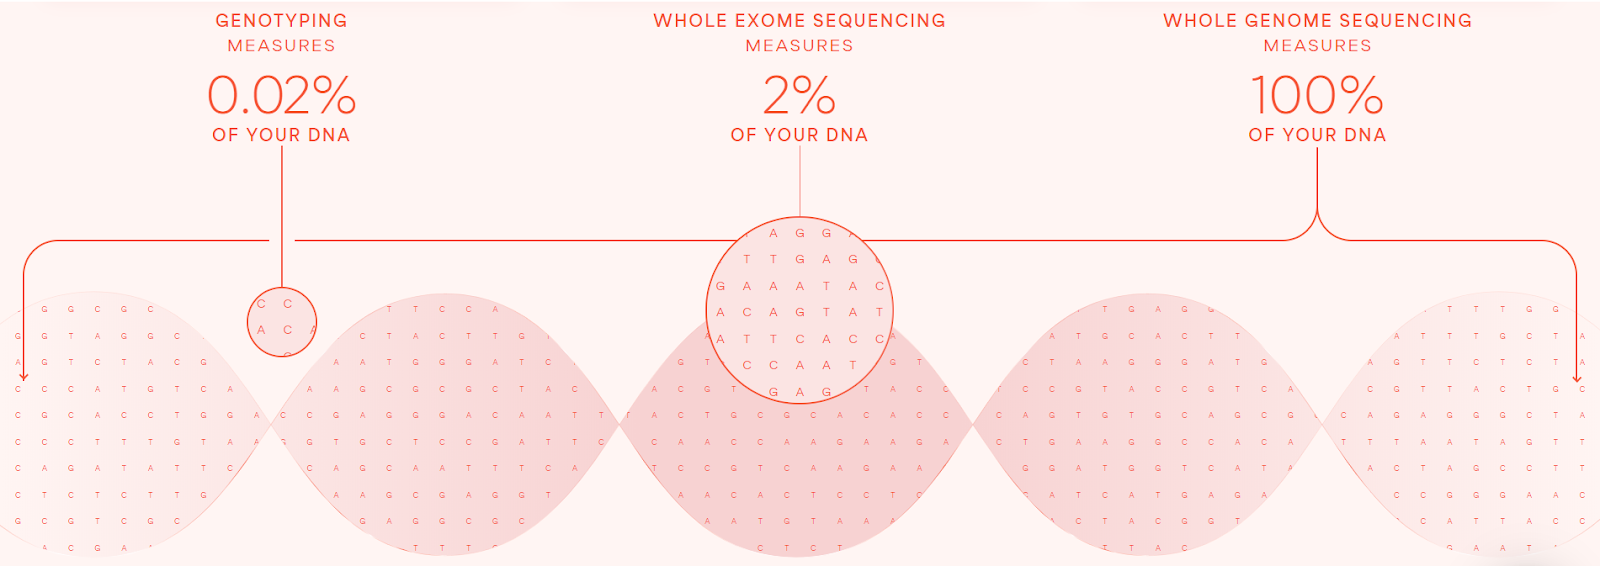 Diagramm zur Darstellung des Prozentsatzes Ihrer DNA, der durch Gentotypisierung, Whole-Exome-Sequenzierung und Whole-Genome-Sequenzierung bei Sano Genetics gemessen wurde